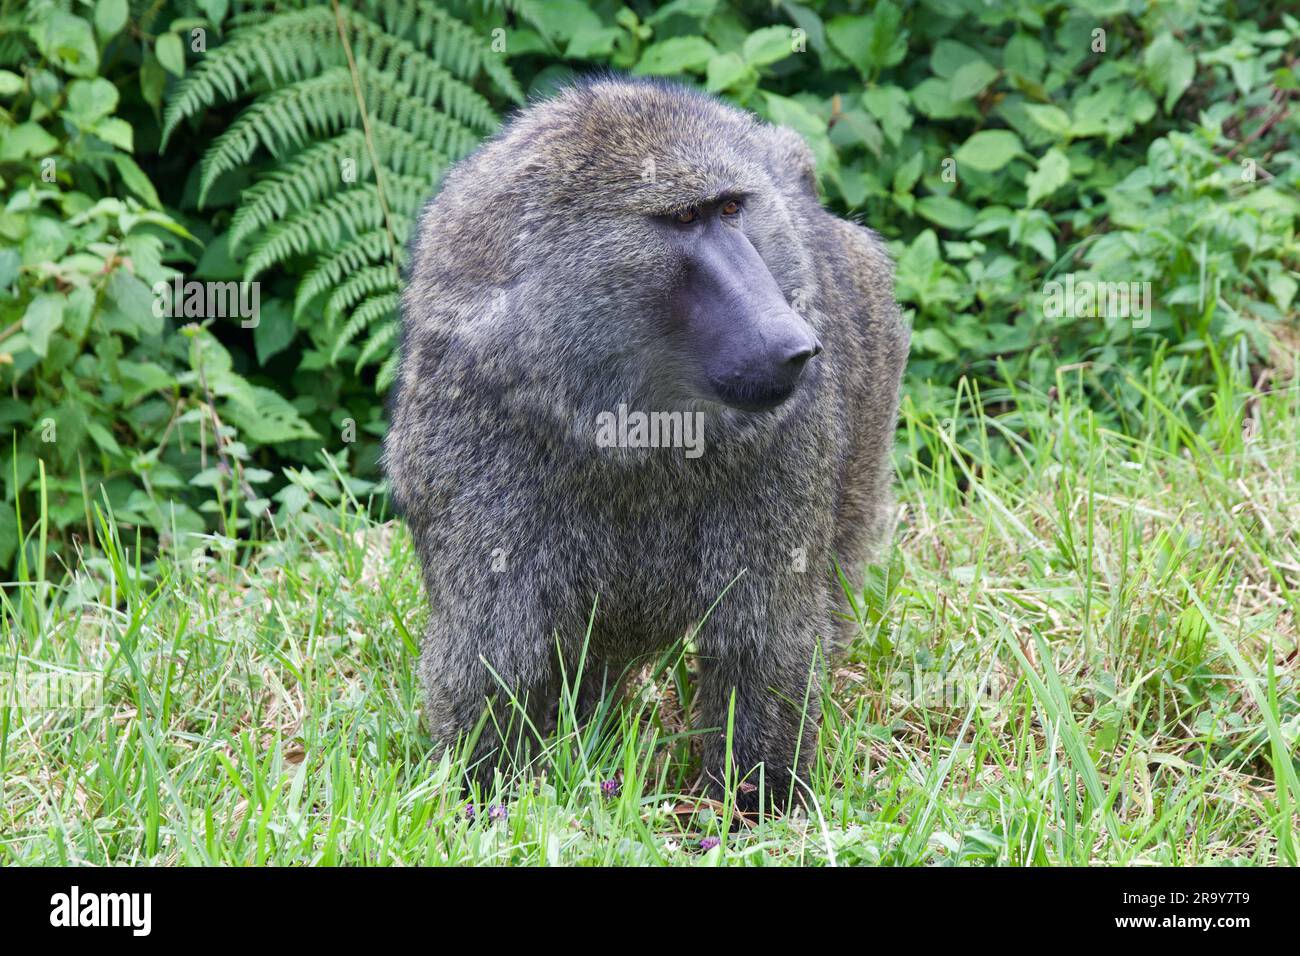 Un babouin d'olive (Papio anubis), également connu sous le nom de babouin Anubis en Ouganda Banque D'Images